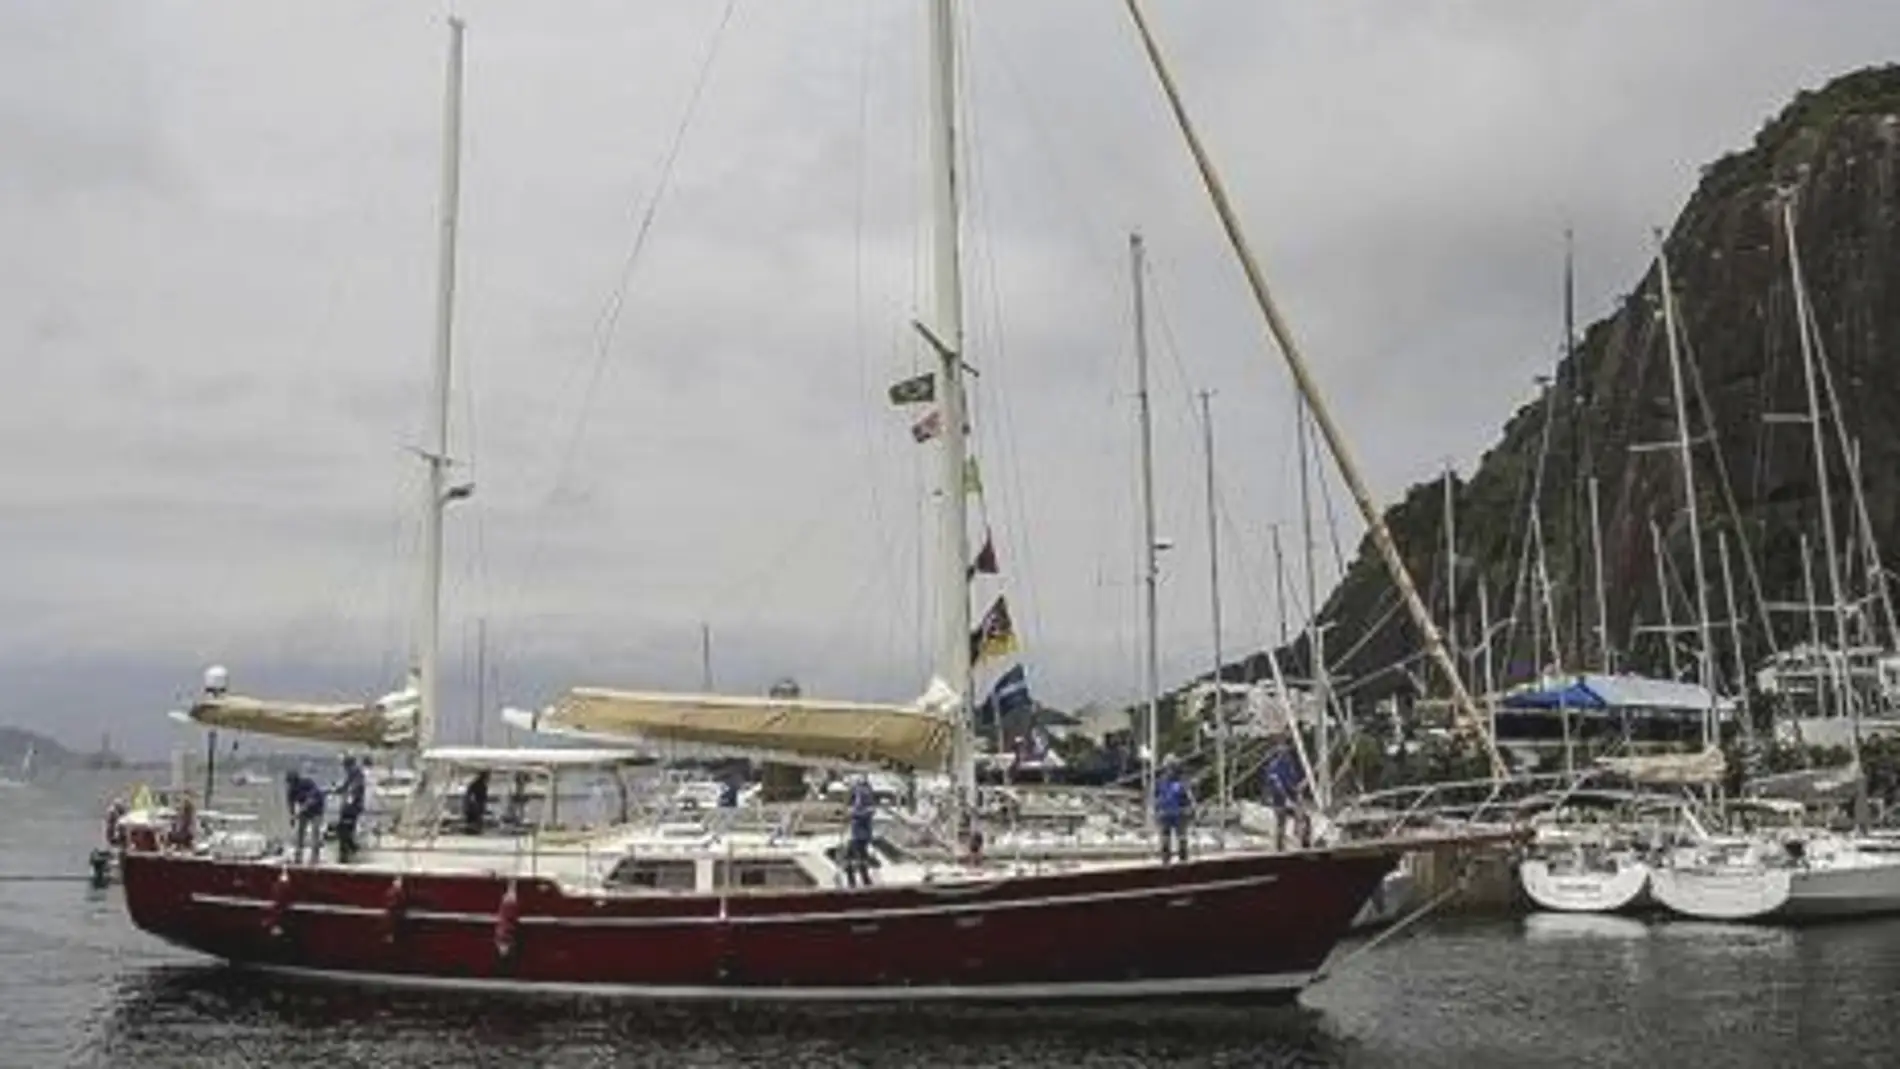 El velero "Pros" fondeado en el puerto de Apra desaparece tras la llegada del tifón Mawar 